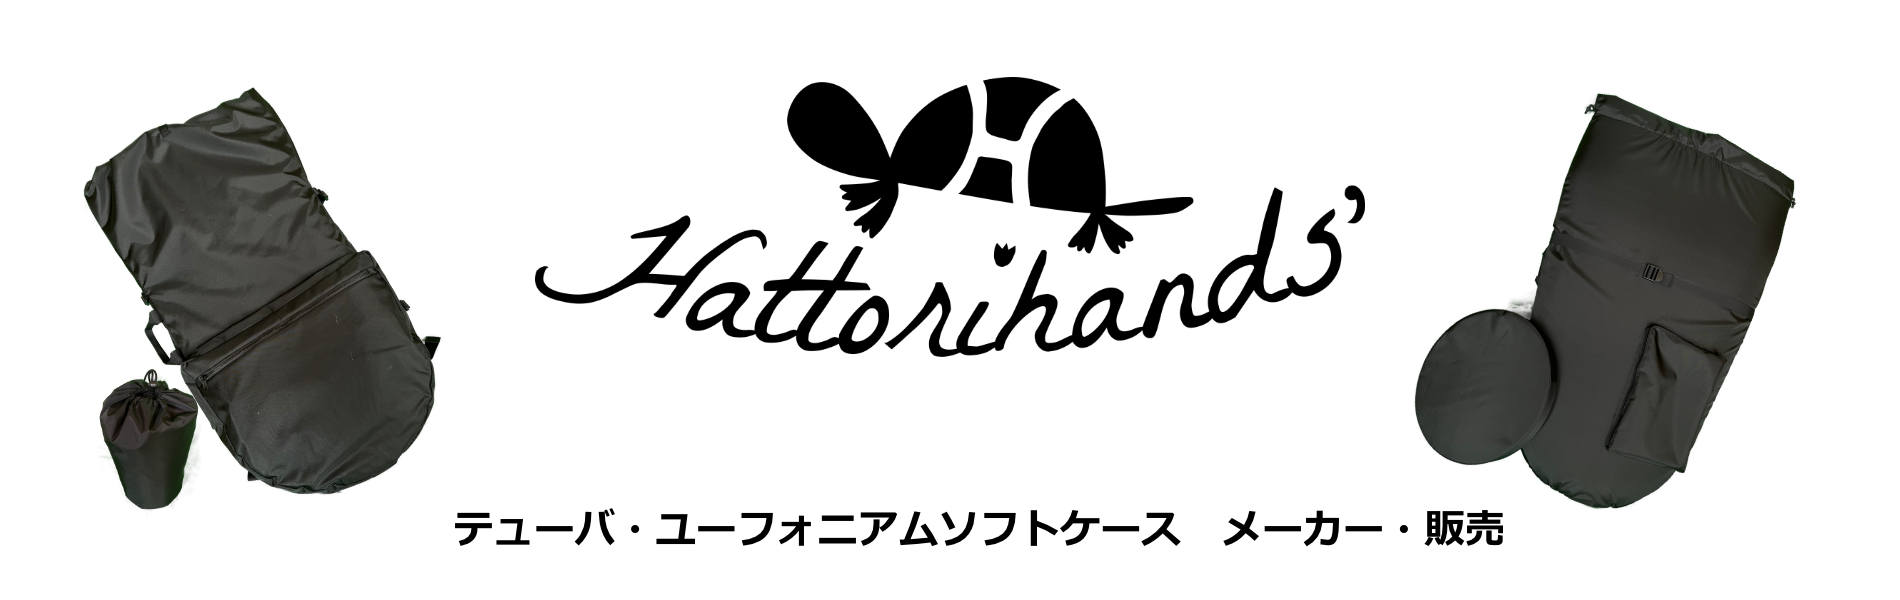 服部ハンズ Hattorihands' | テューバ・ユーフォニアムソフトケース